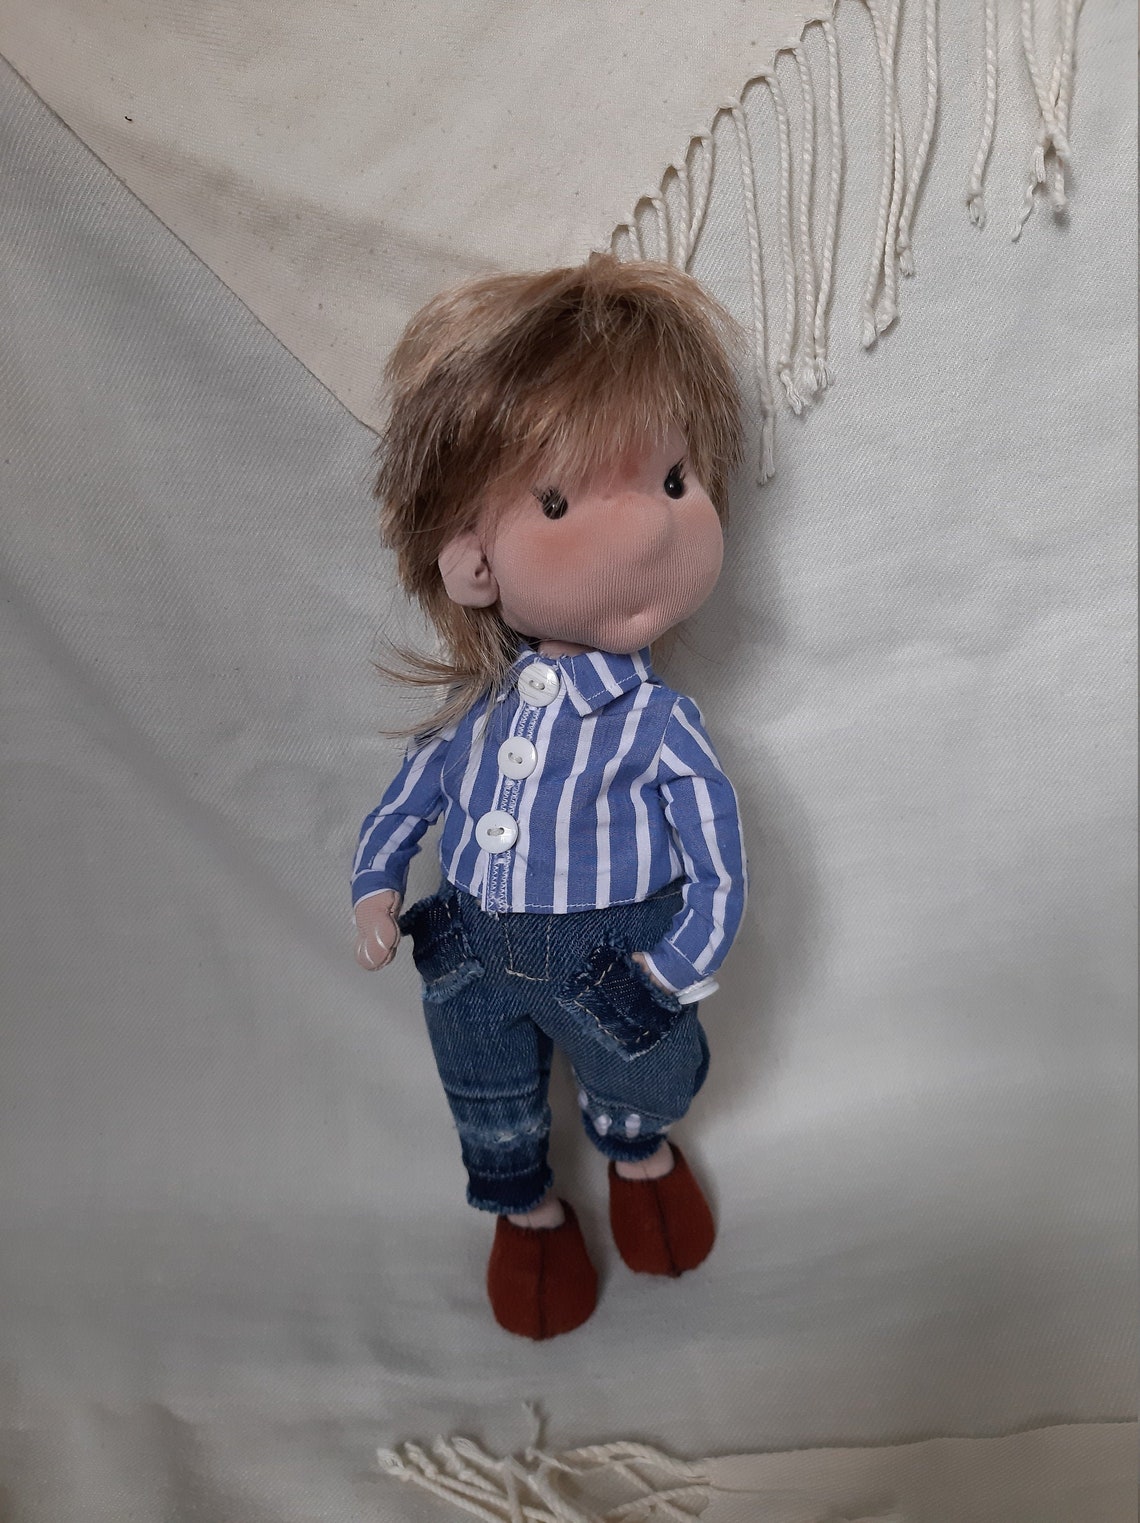 Blonde Doll Boy Small Cute Boy Textile Rag Fabric Boy | Etsy